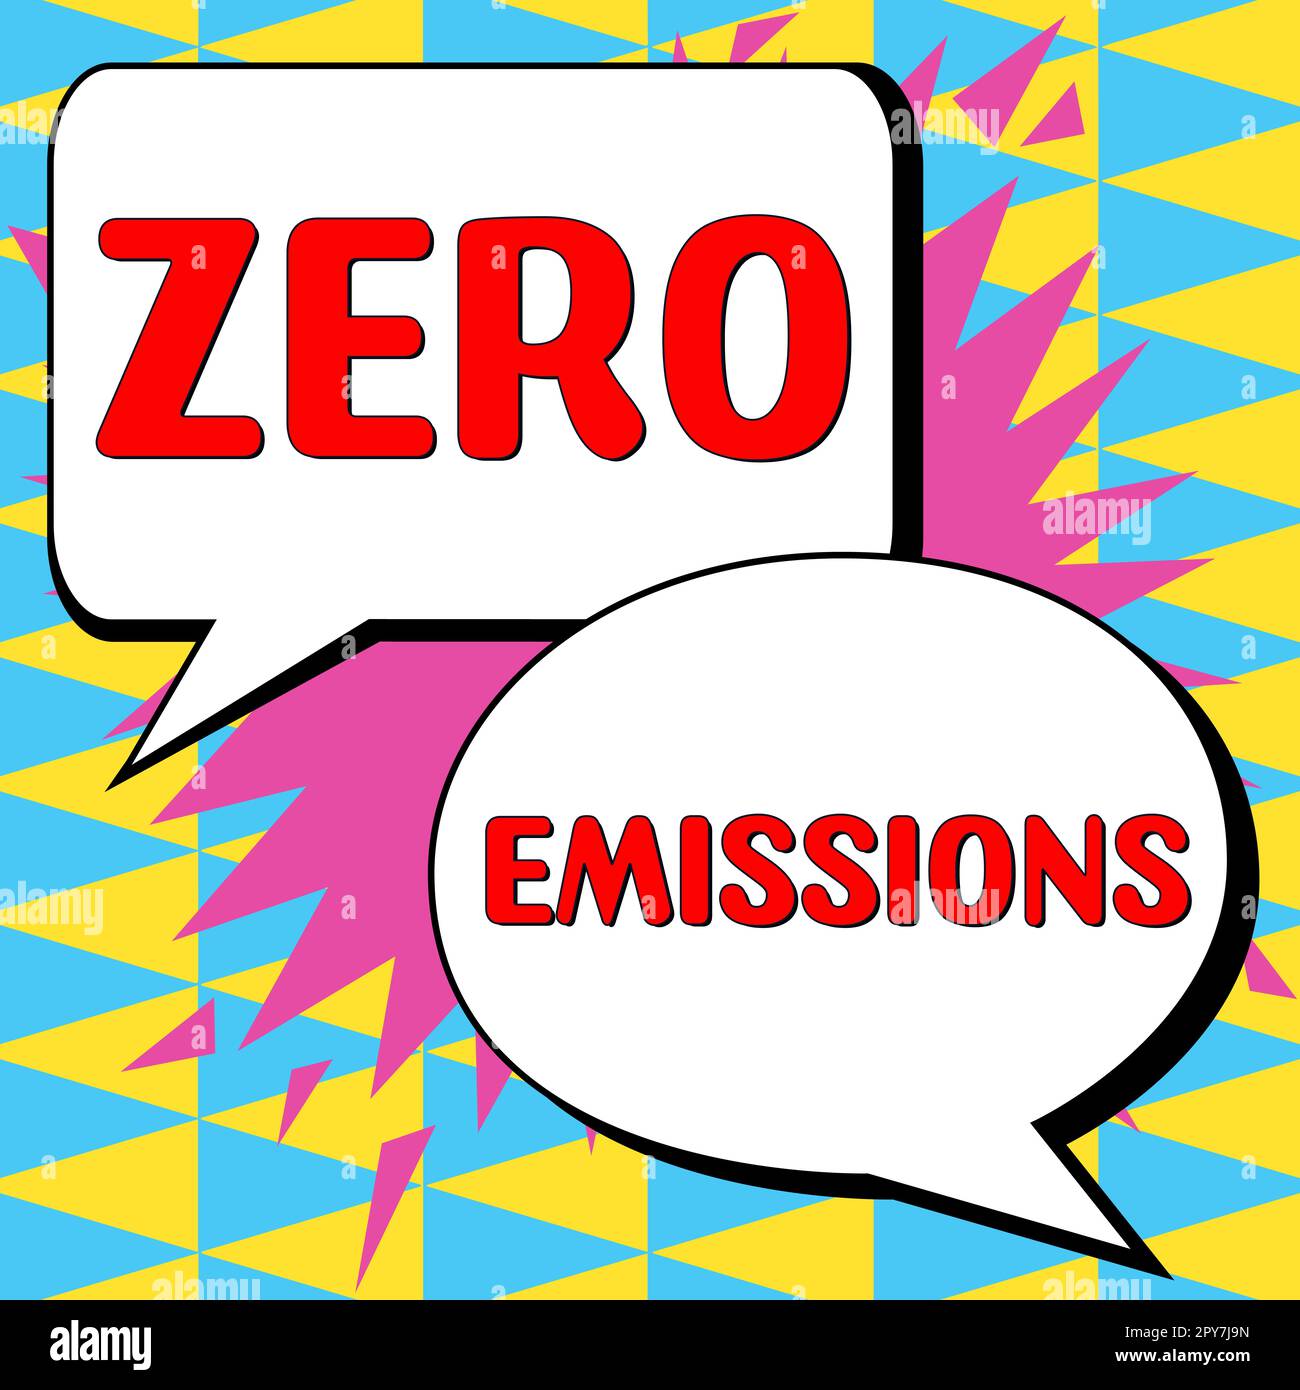 Visualizzazione concettuale emissioni zero. Le parole scritte non emettono rifiuti che inquinano l'ambiente Foto Stock